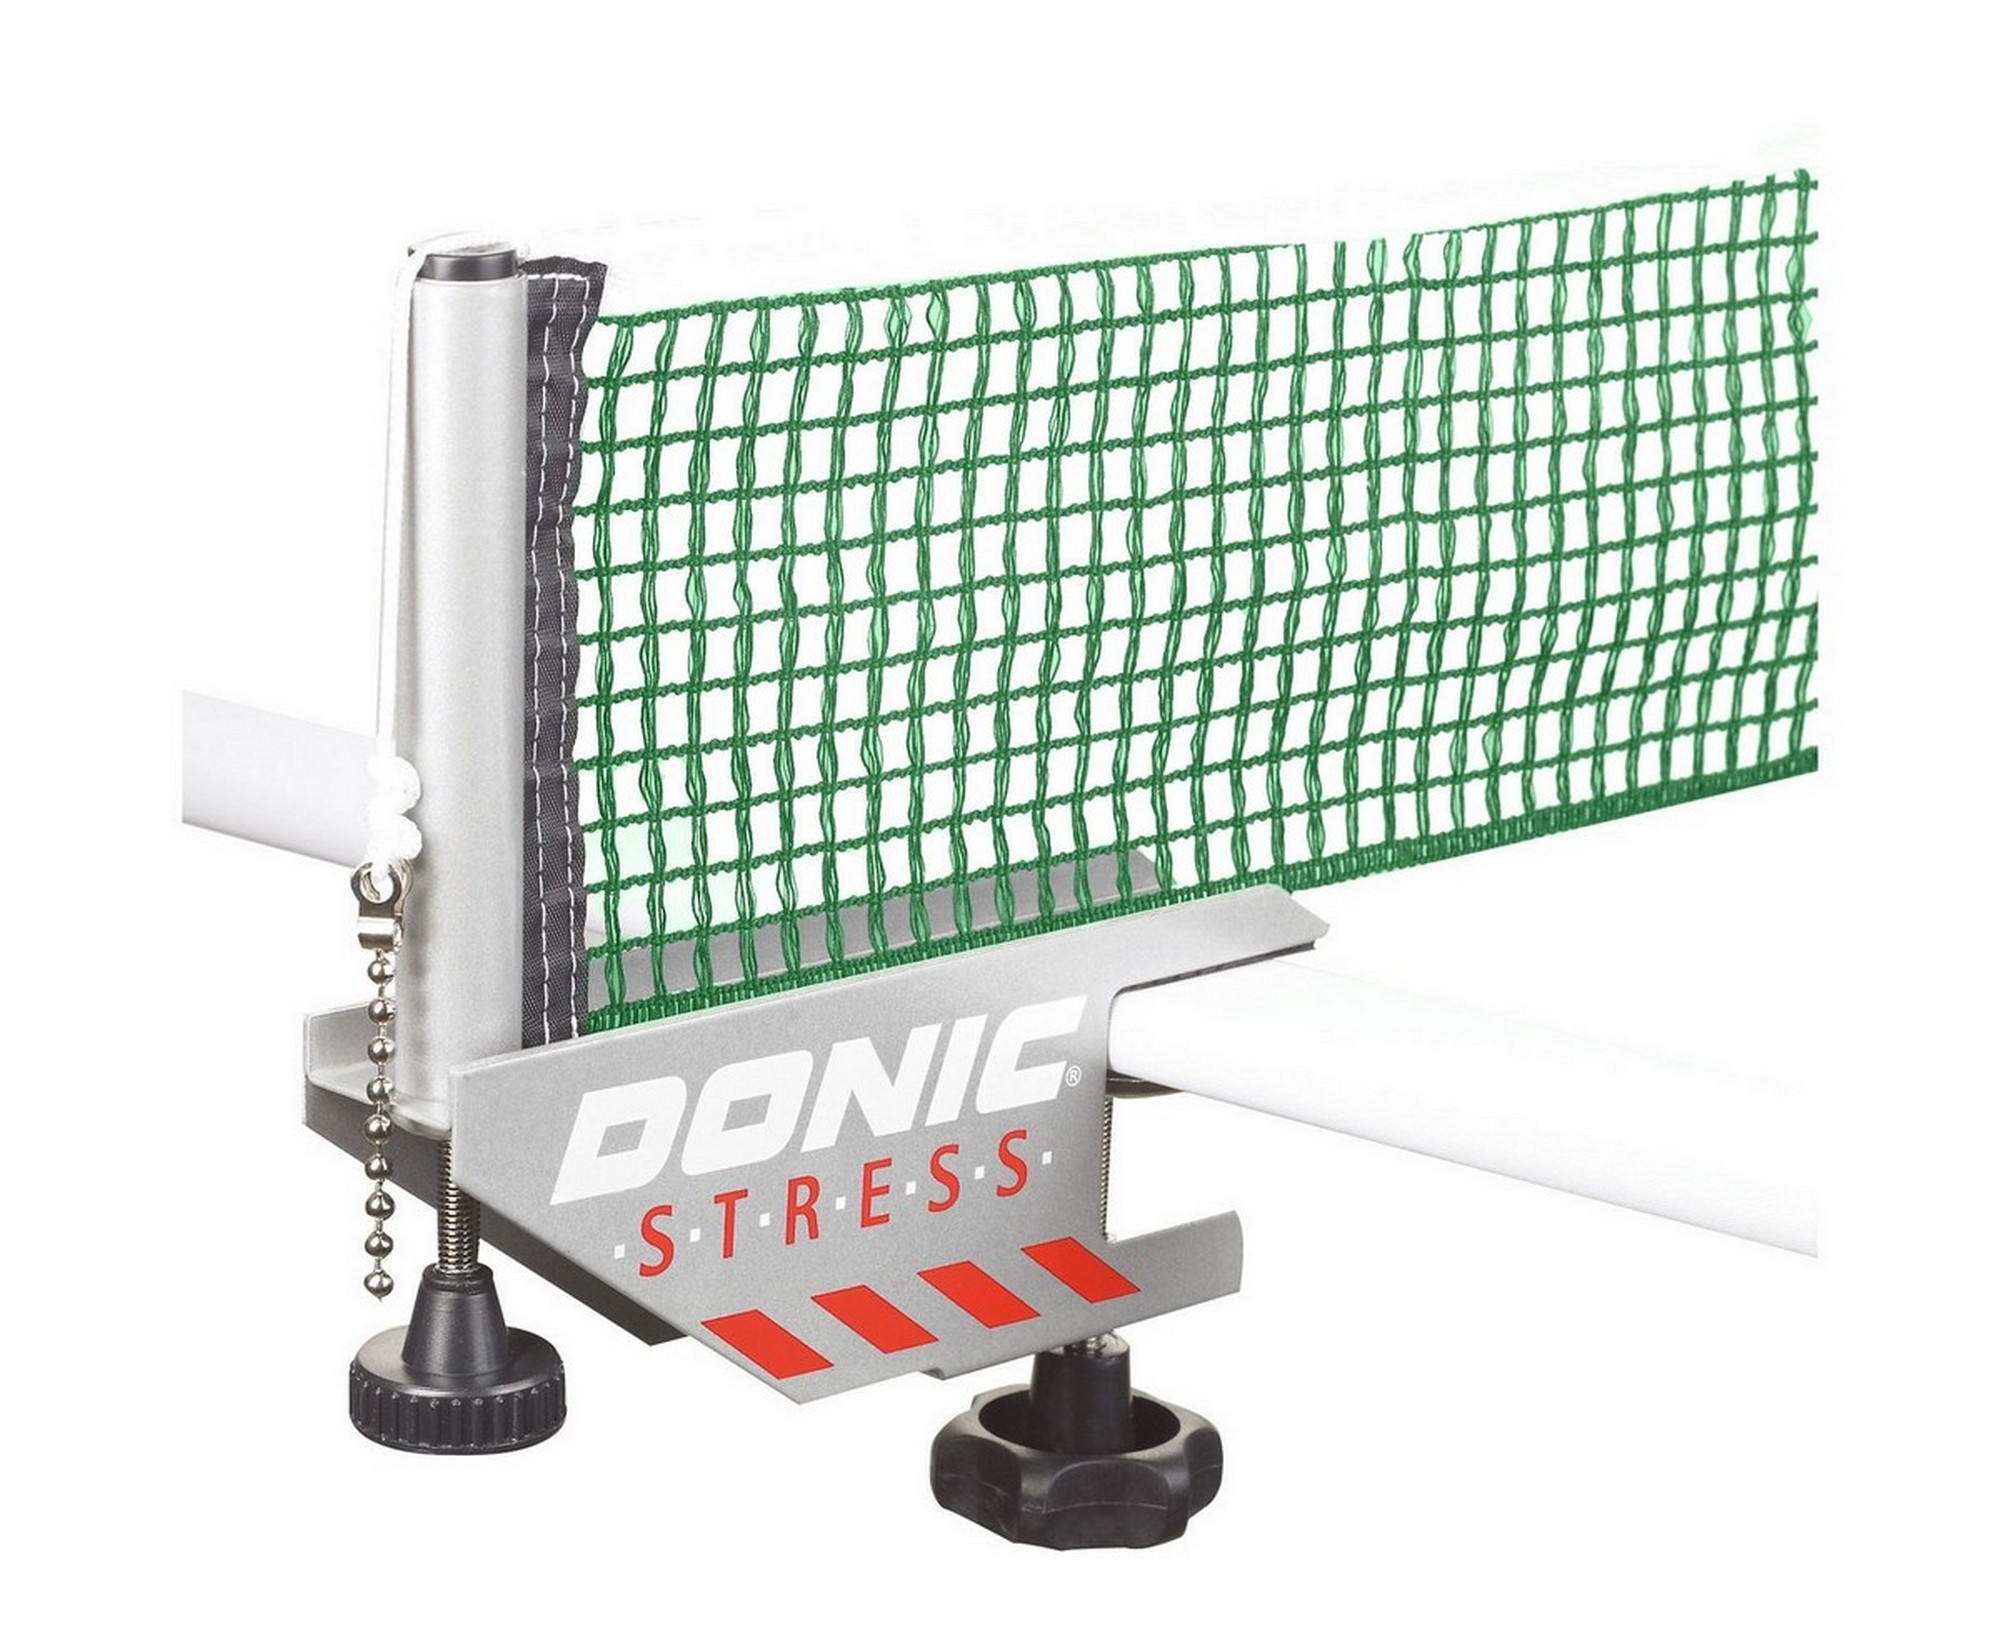 Сетка для настольного тенниса Donic Stress 410211-GG серый с зеленым 2000_1635